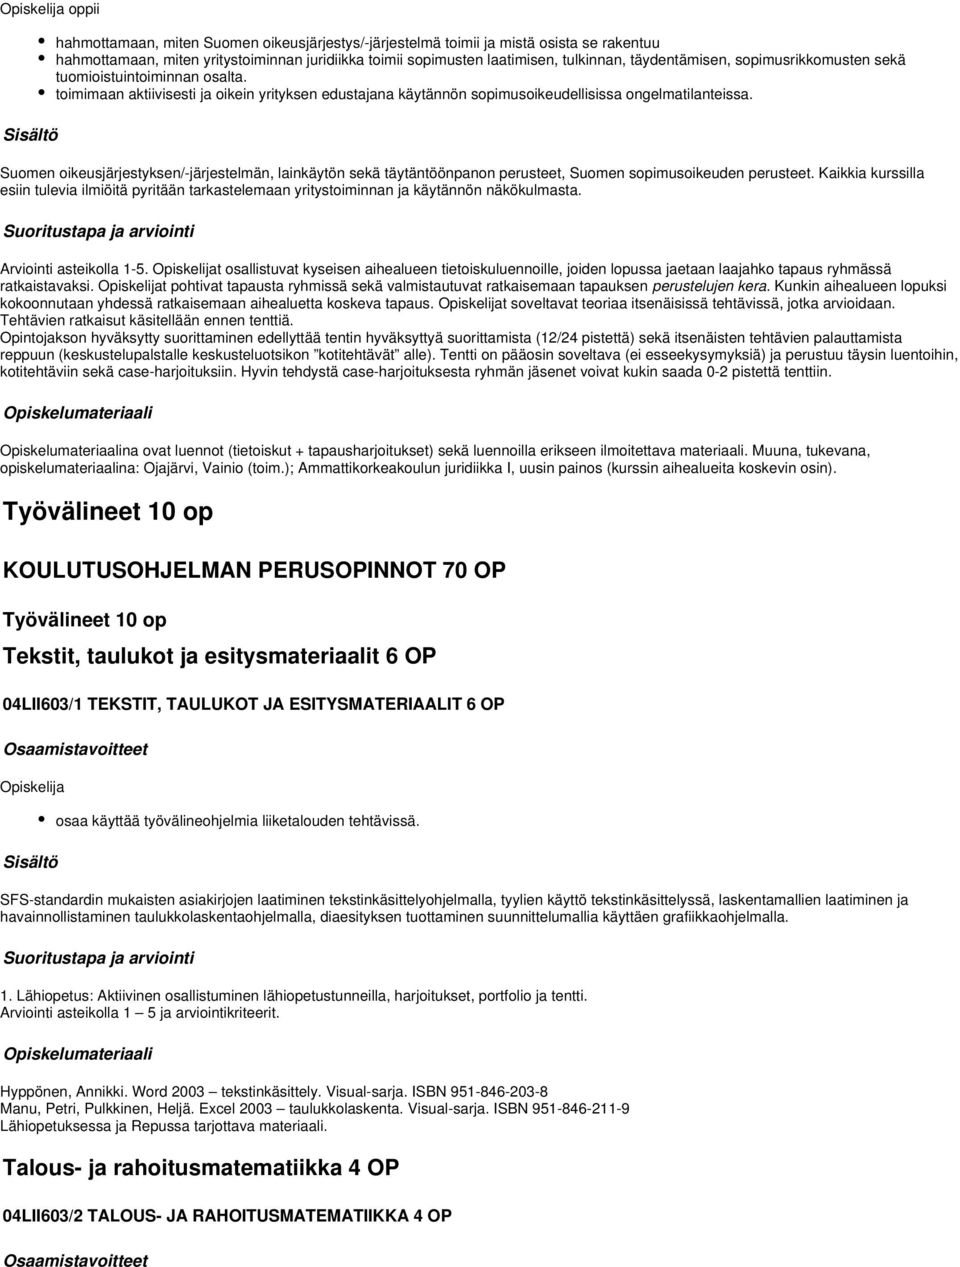 Suomen oikeusjärjestyksen/-järjestelmän, lainkäytön sekä täytäntöönpanon perusteet, Suomen sopimusoikeuden perusteet.